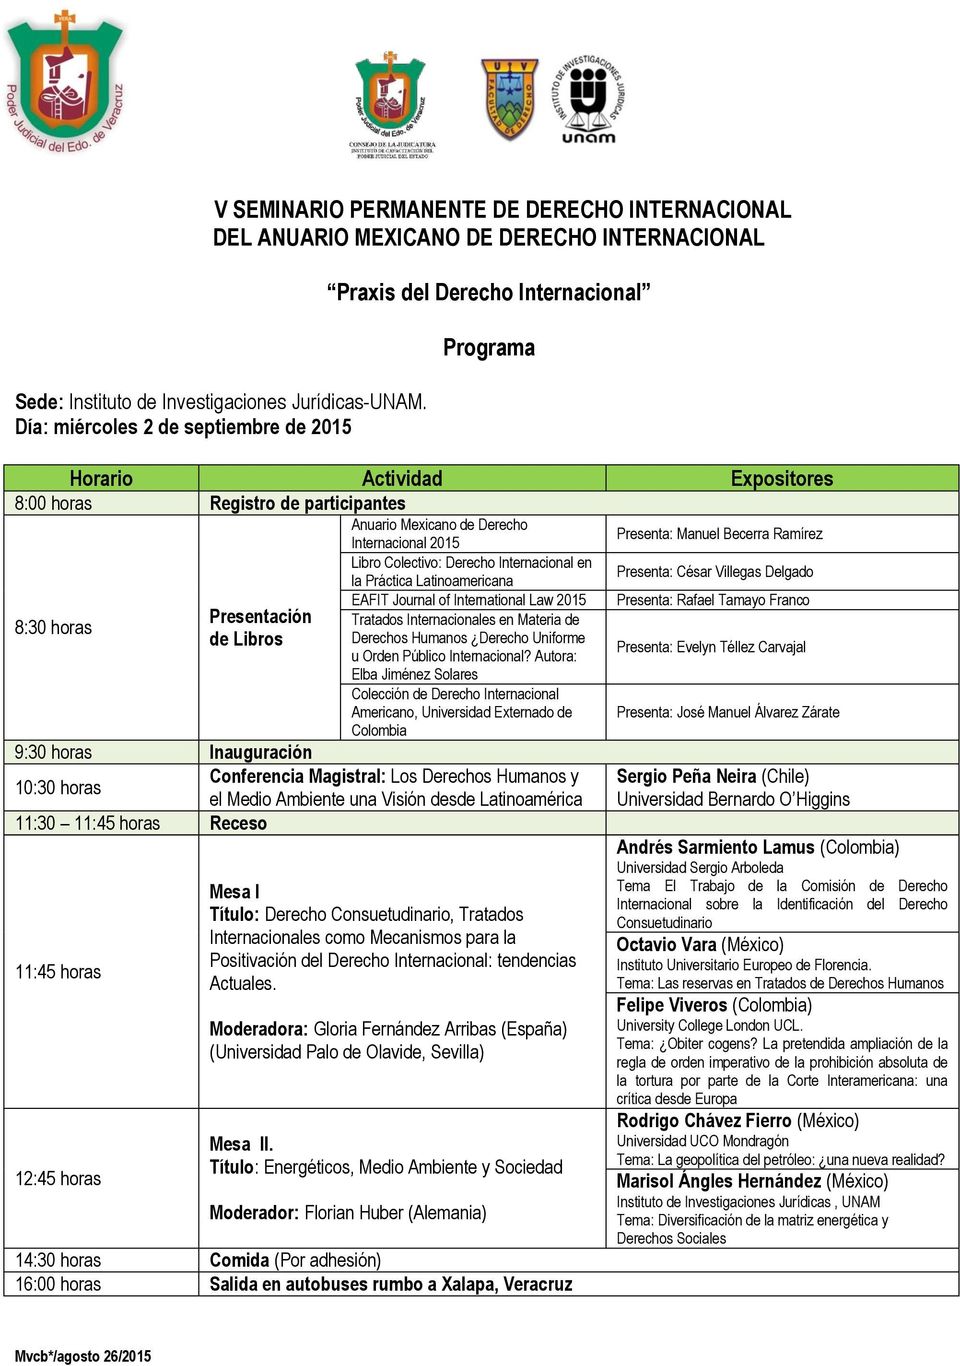 Presenta: César Villegas Delgado 8:30 horas EAFIT Journal of International Law 2015 Presenta: Rafael Tamayo Franco Presentación Tratados es en Materia de de Libros Derechos Humanos Derecho Uniforme